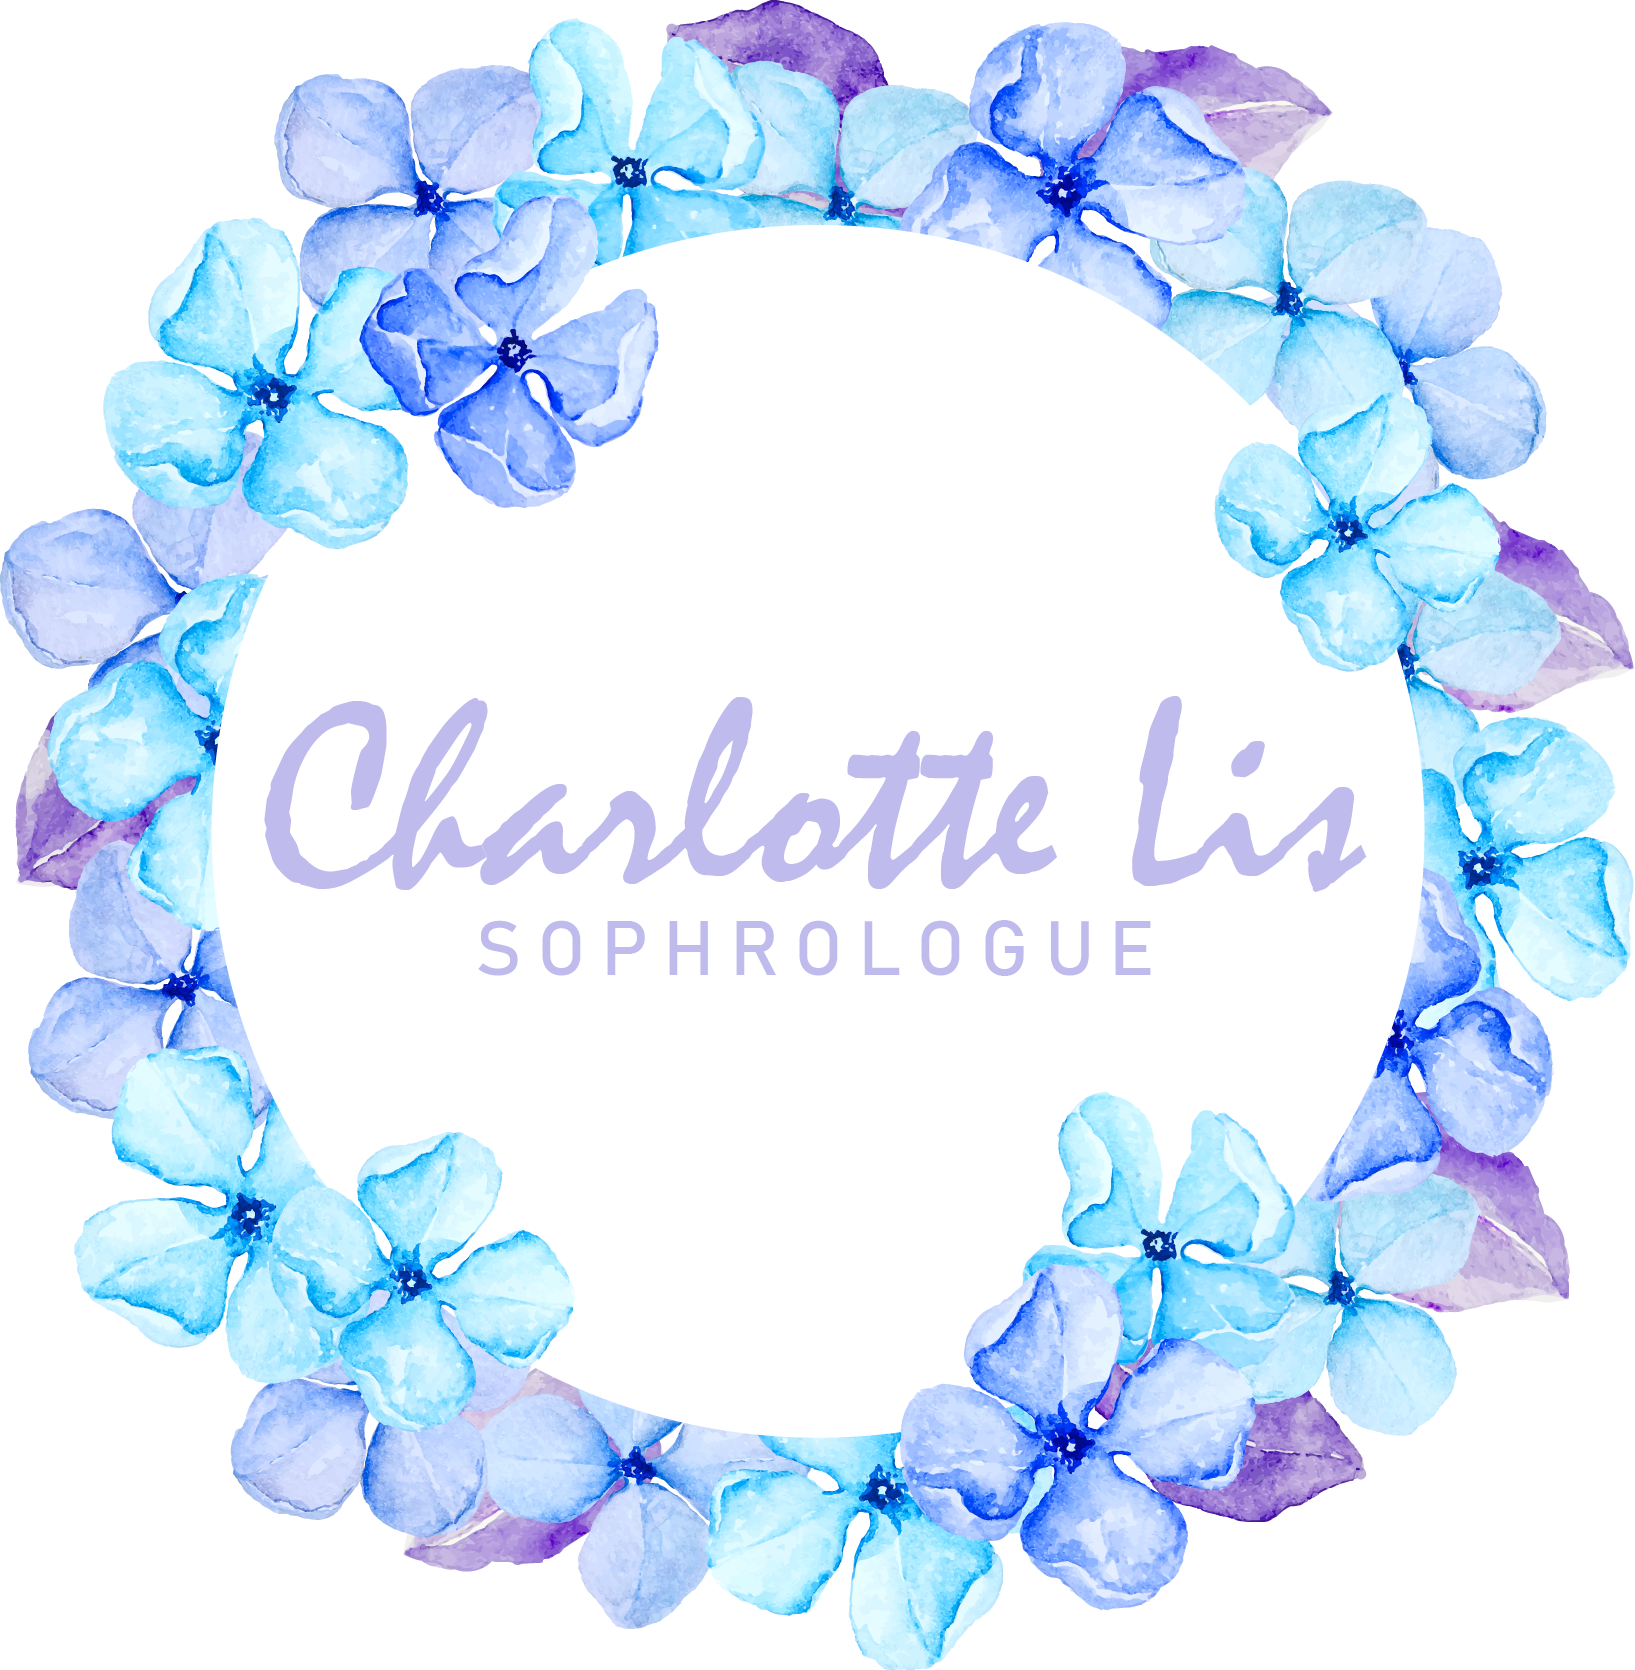 Charlotte Lis – Hypnothérapeute Sophrologue 74